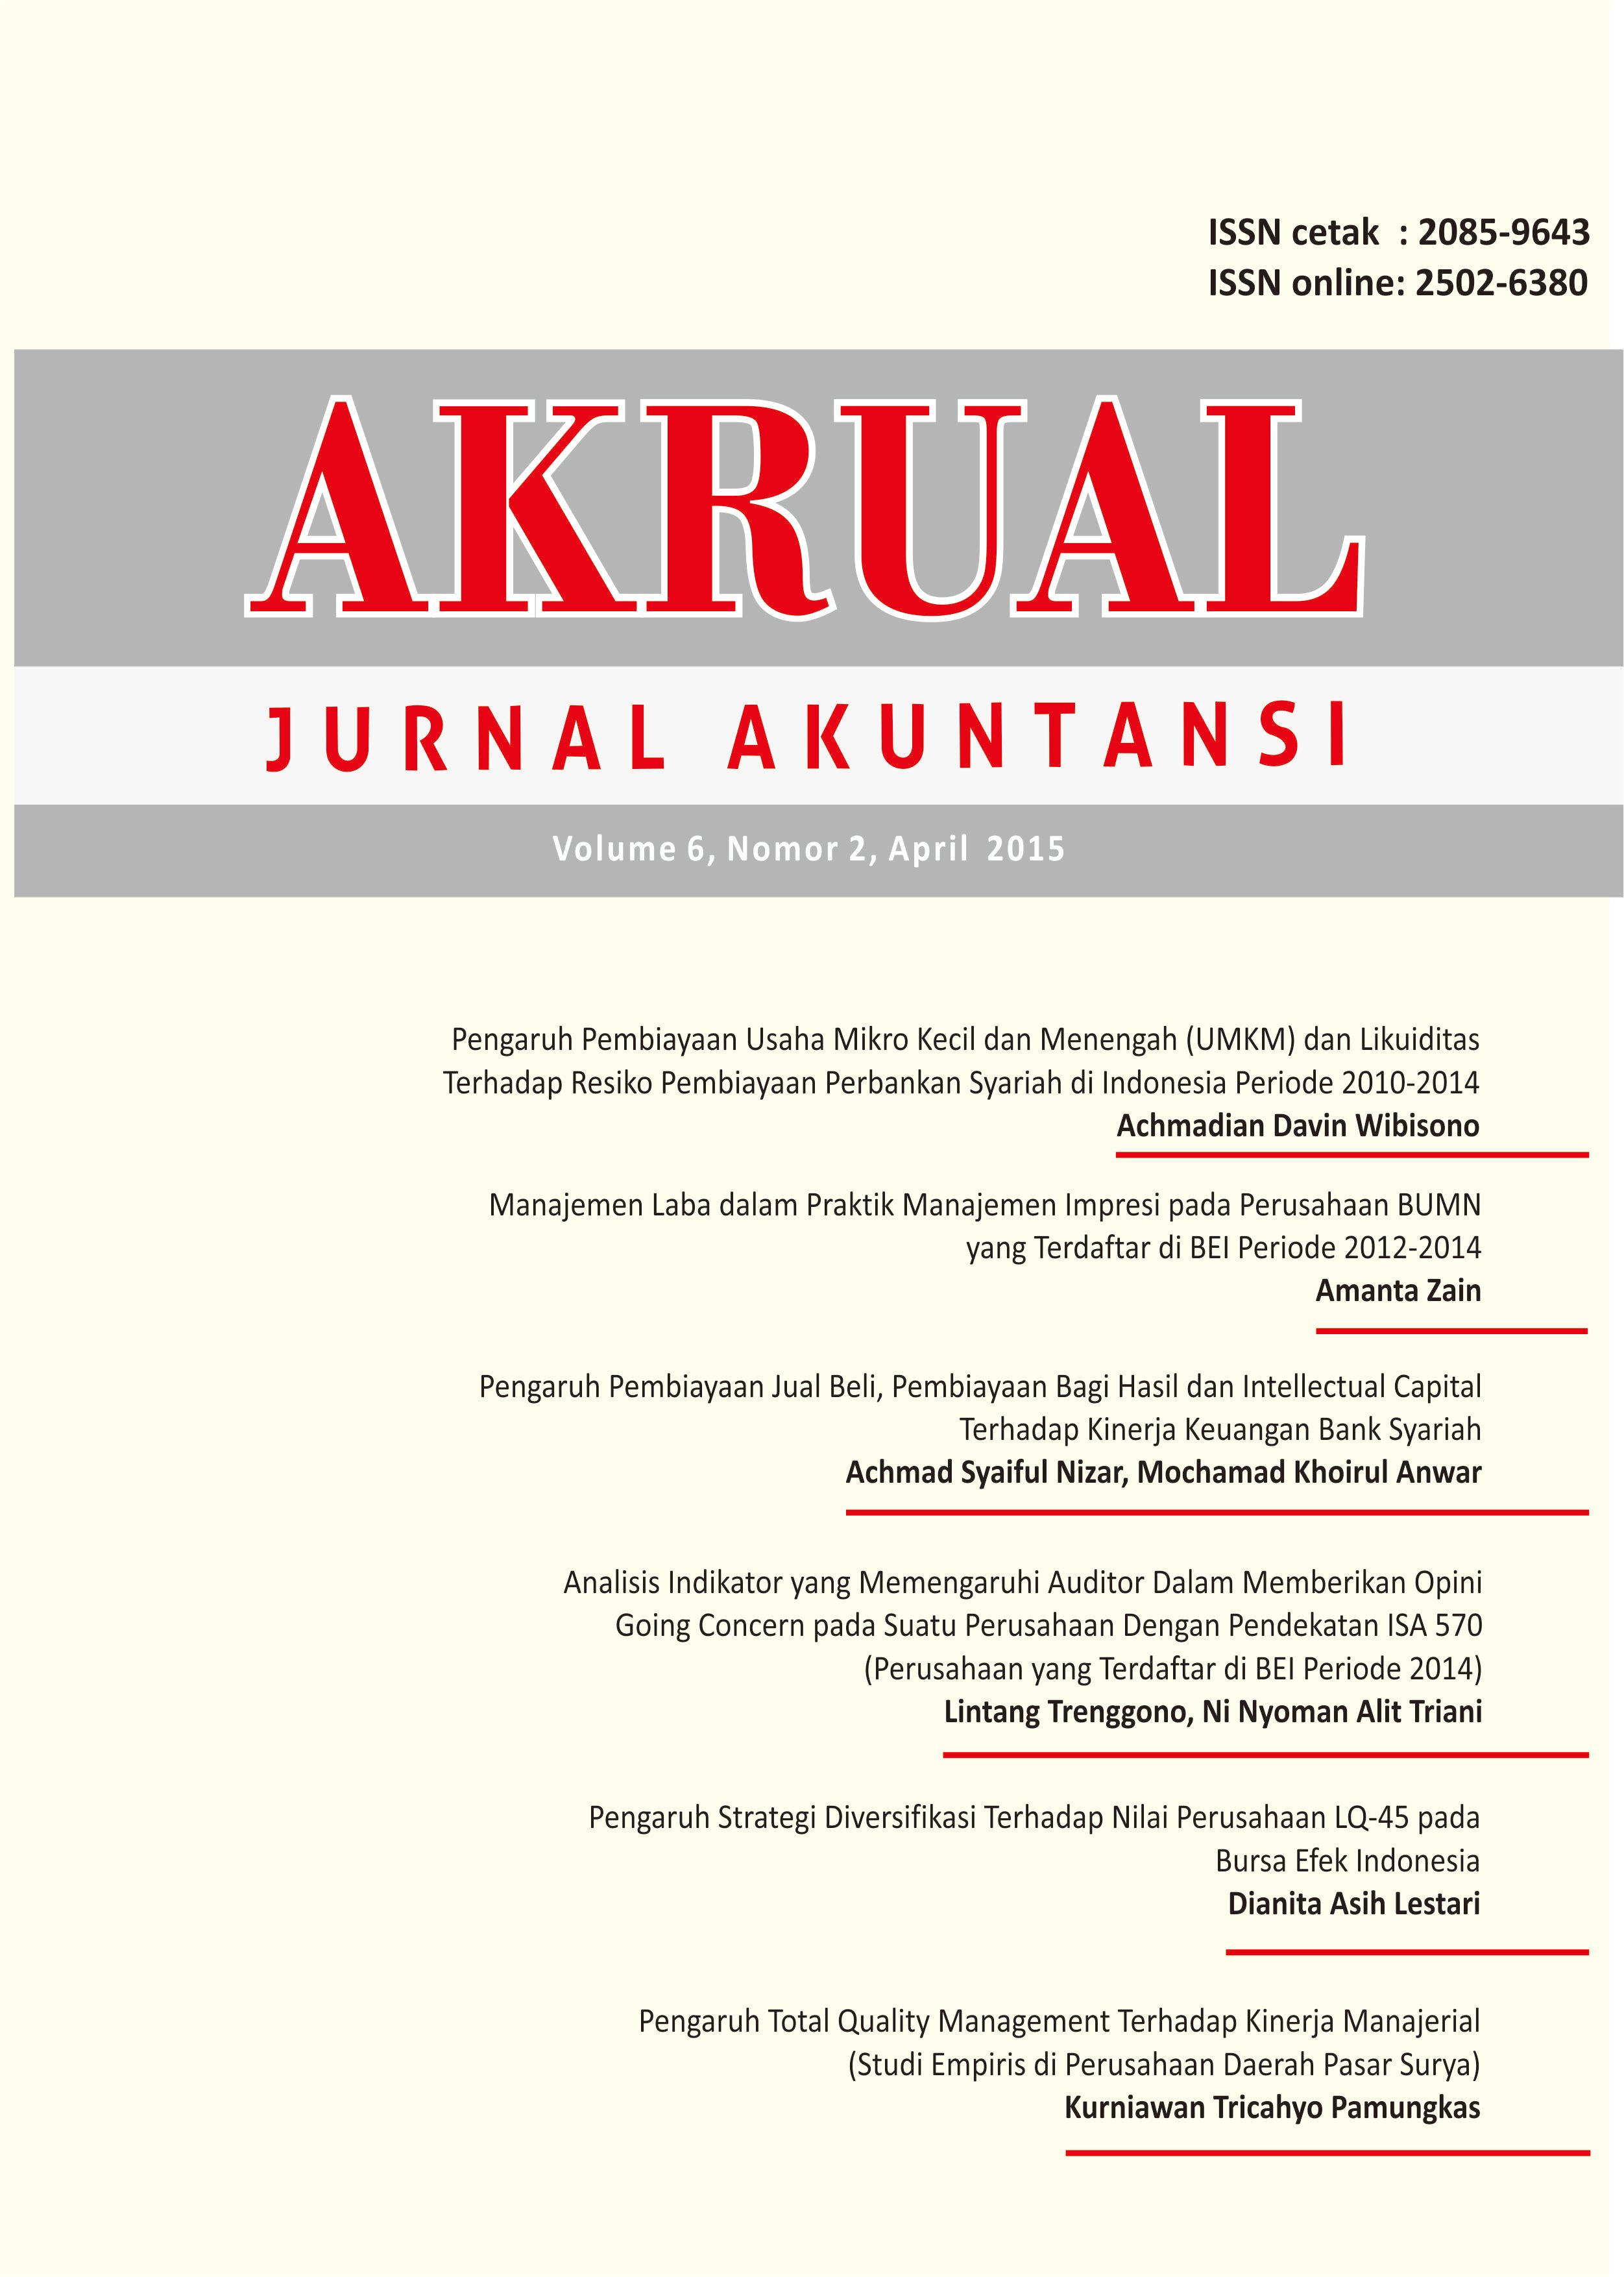 					View Vol. 6 No. 2: AKRUAL: Jurnal Akuntansi (April 2015)
				